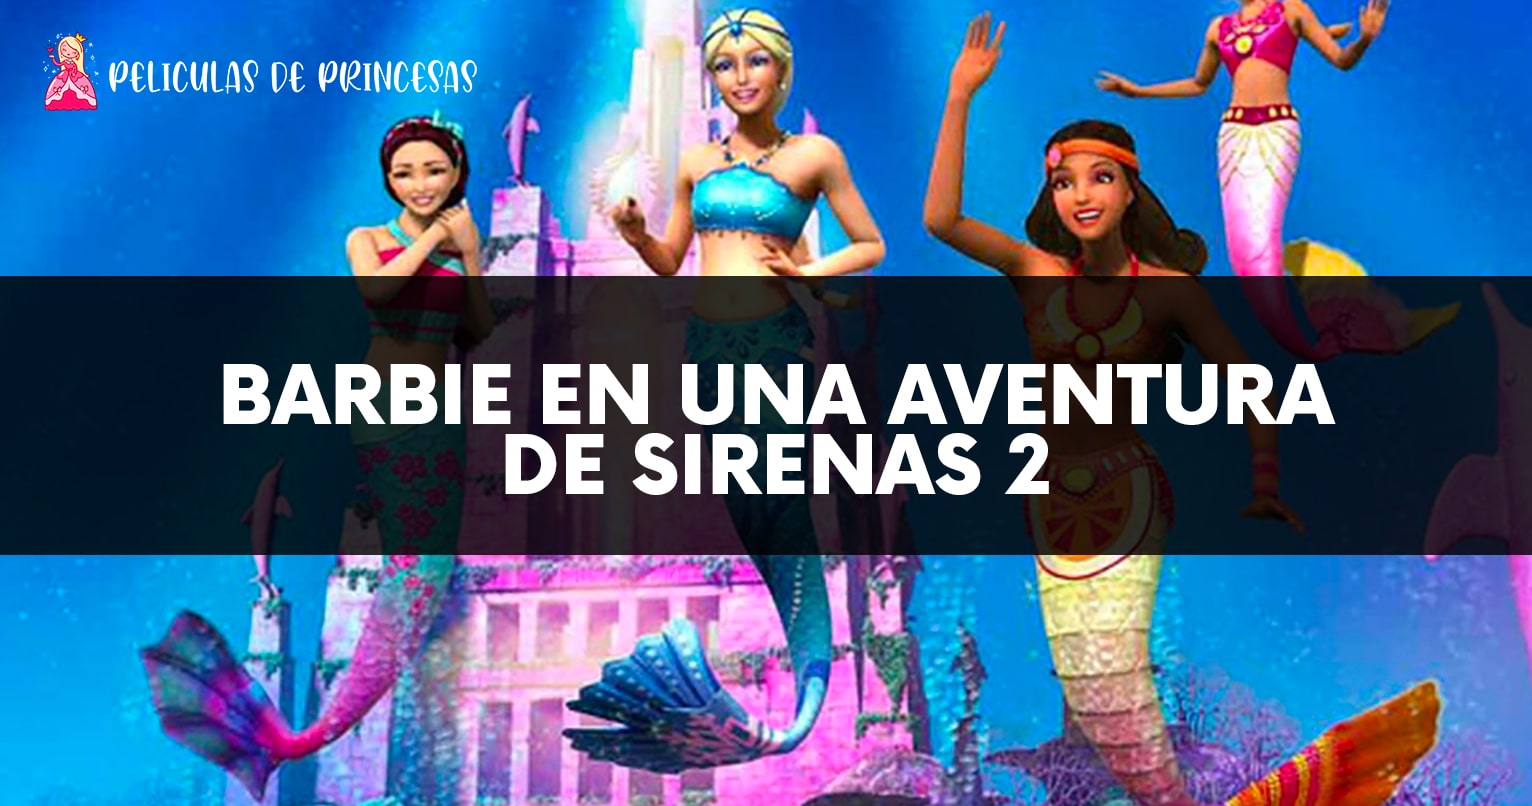 Barbie en una aventura de sirenas 2 – Película completa Gratis Online